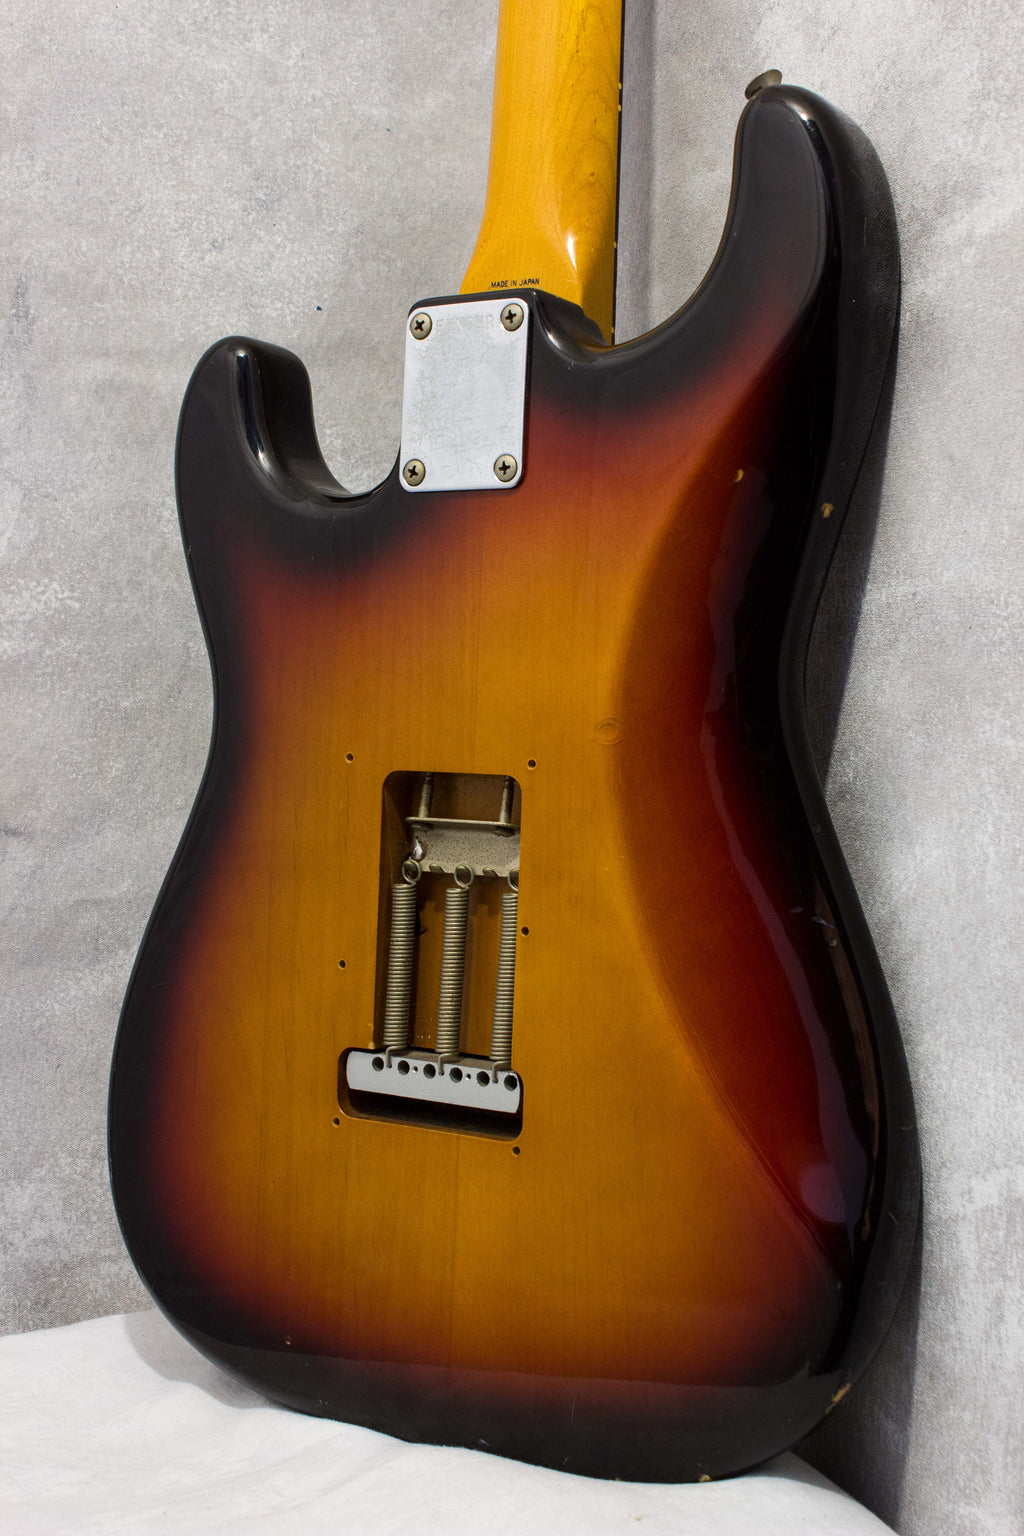 Fender Japan '62 Stratocaster ST62-70 w/ Scalloped Board Sunburst 1989